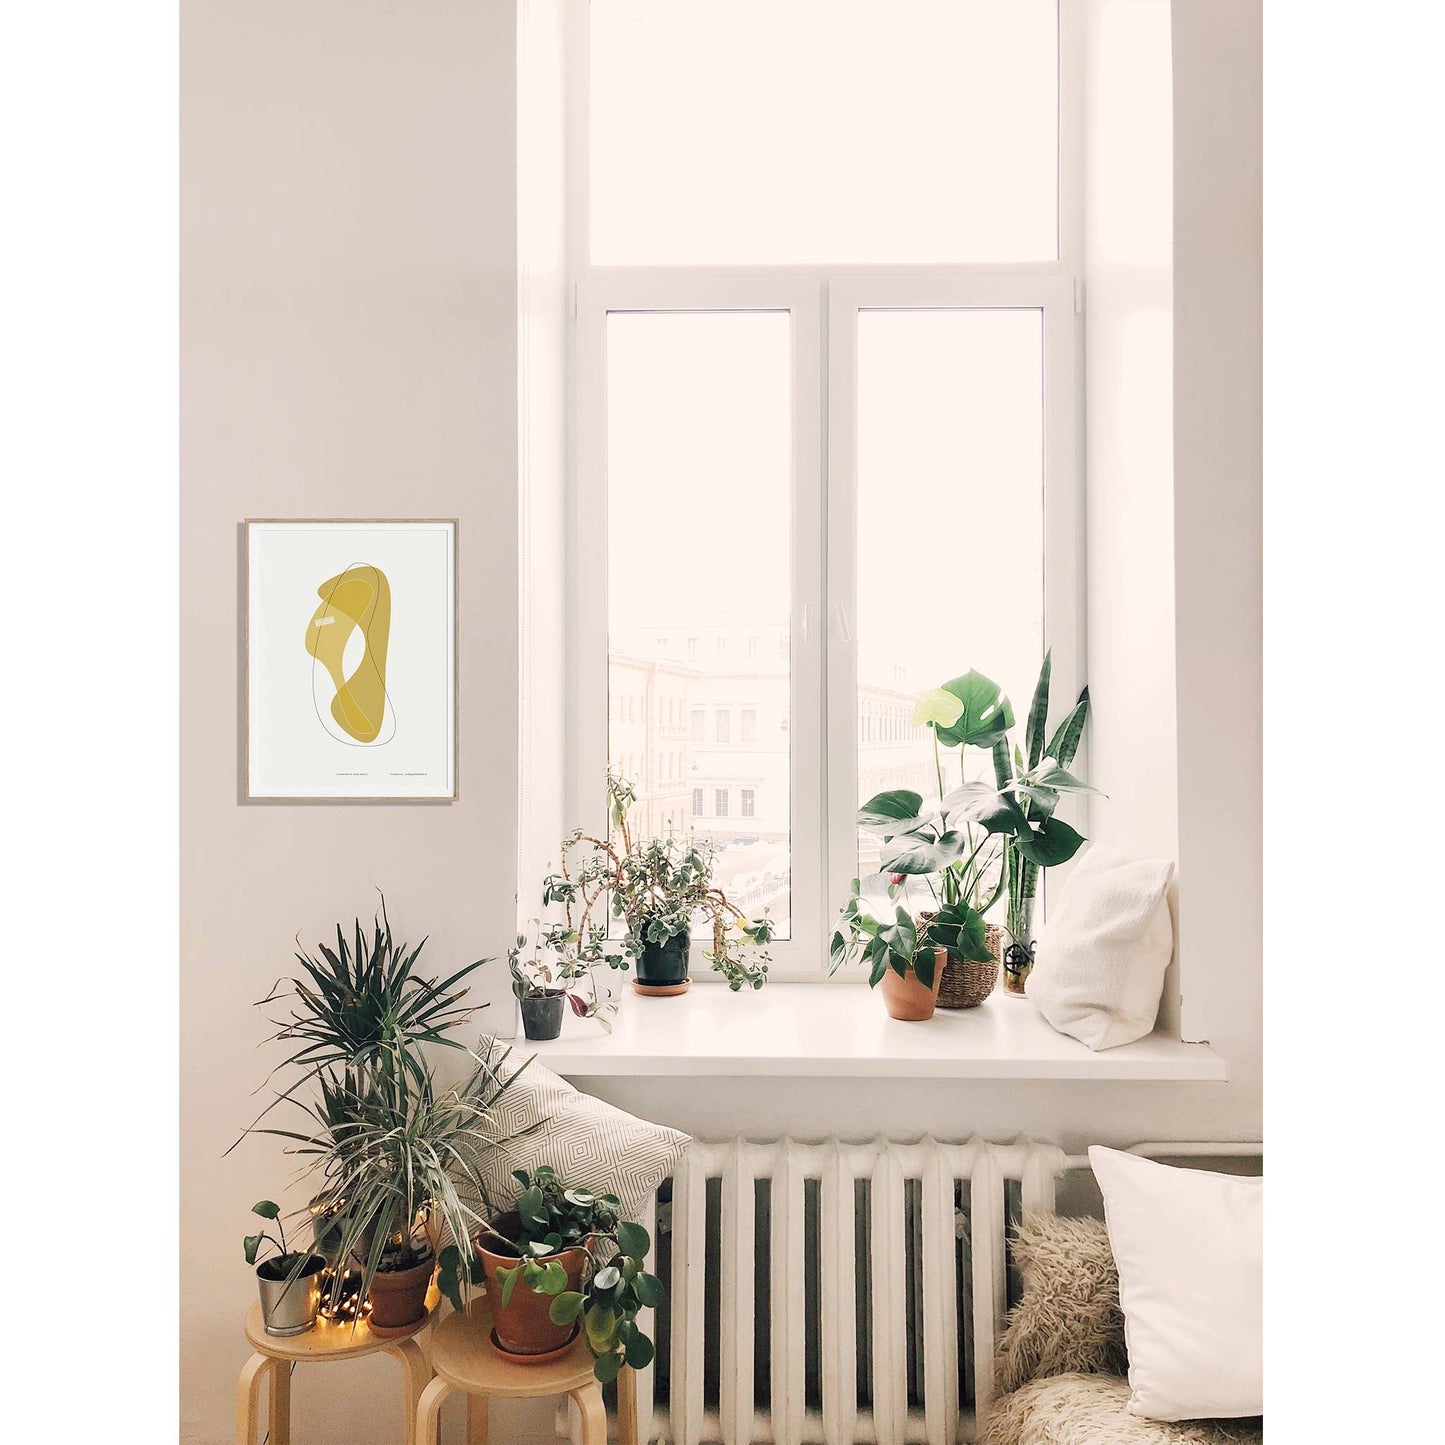 Productafbeelding, poster "vorm één in ocre jaune", foto impressie 2, hangend ingelijst in een interieur naast een raam met planten